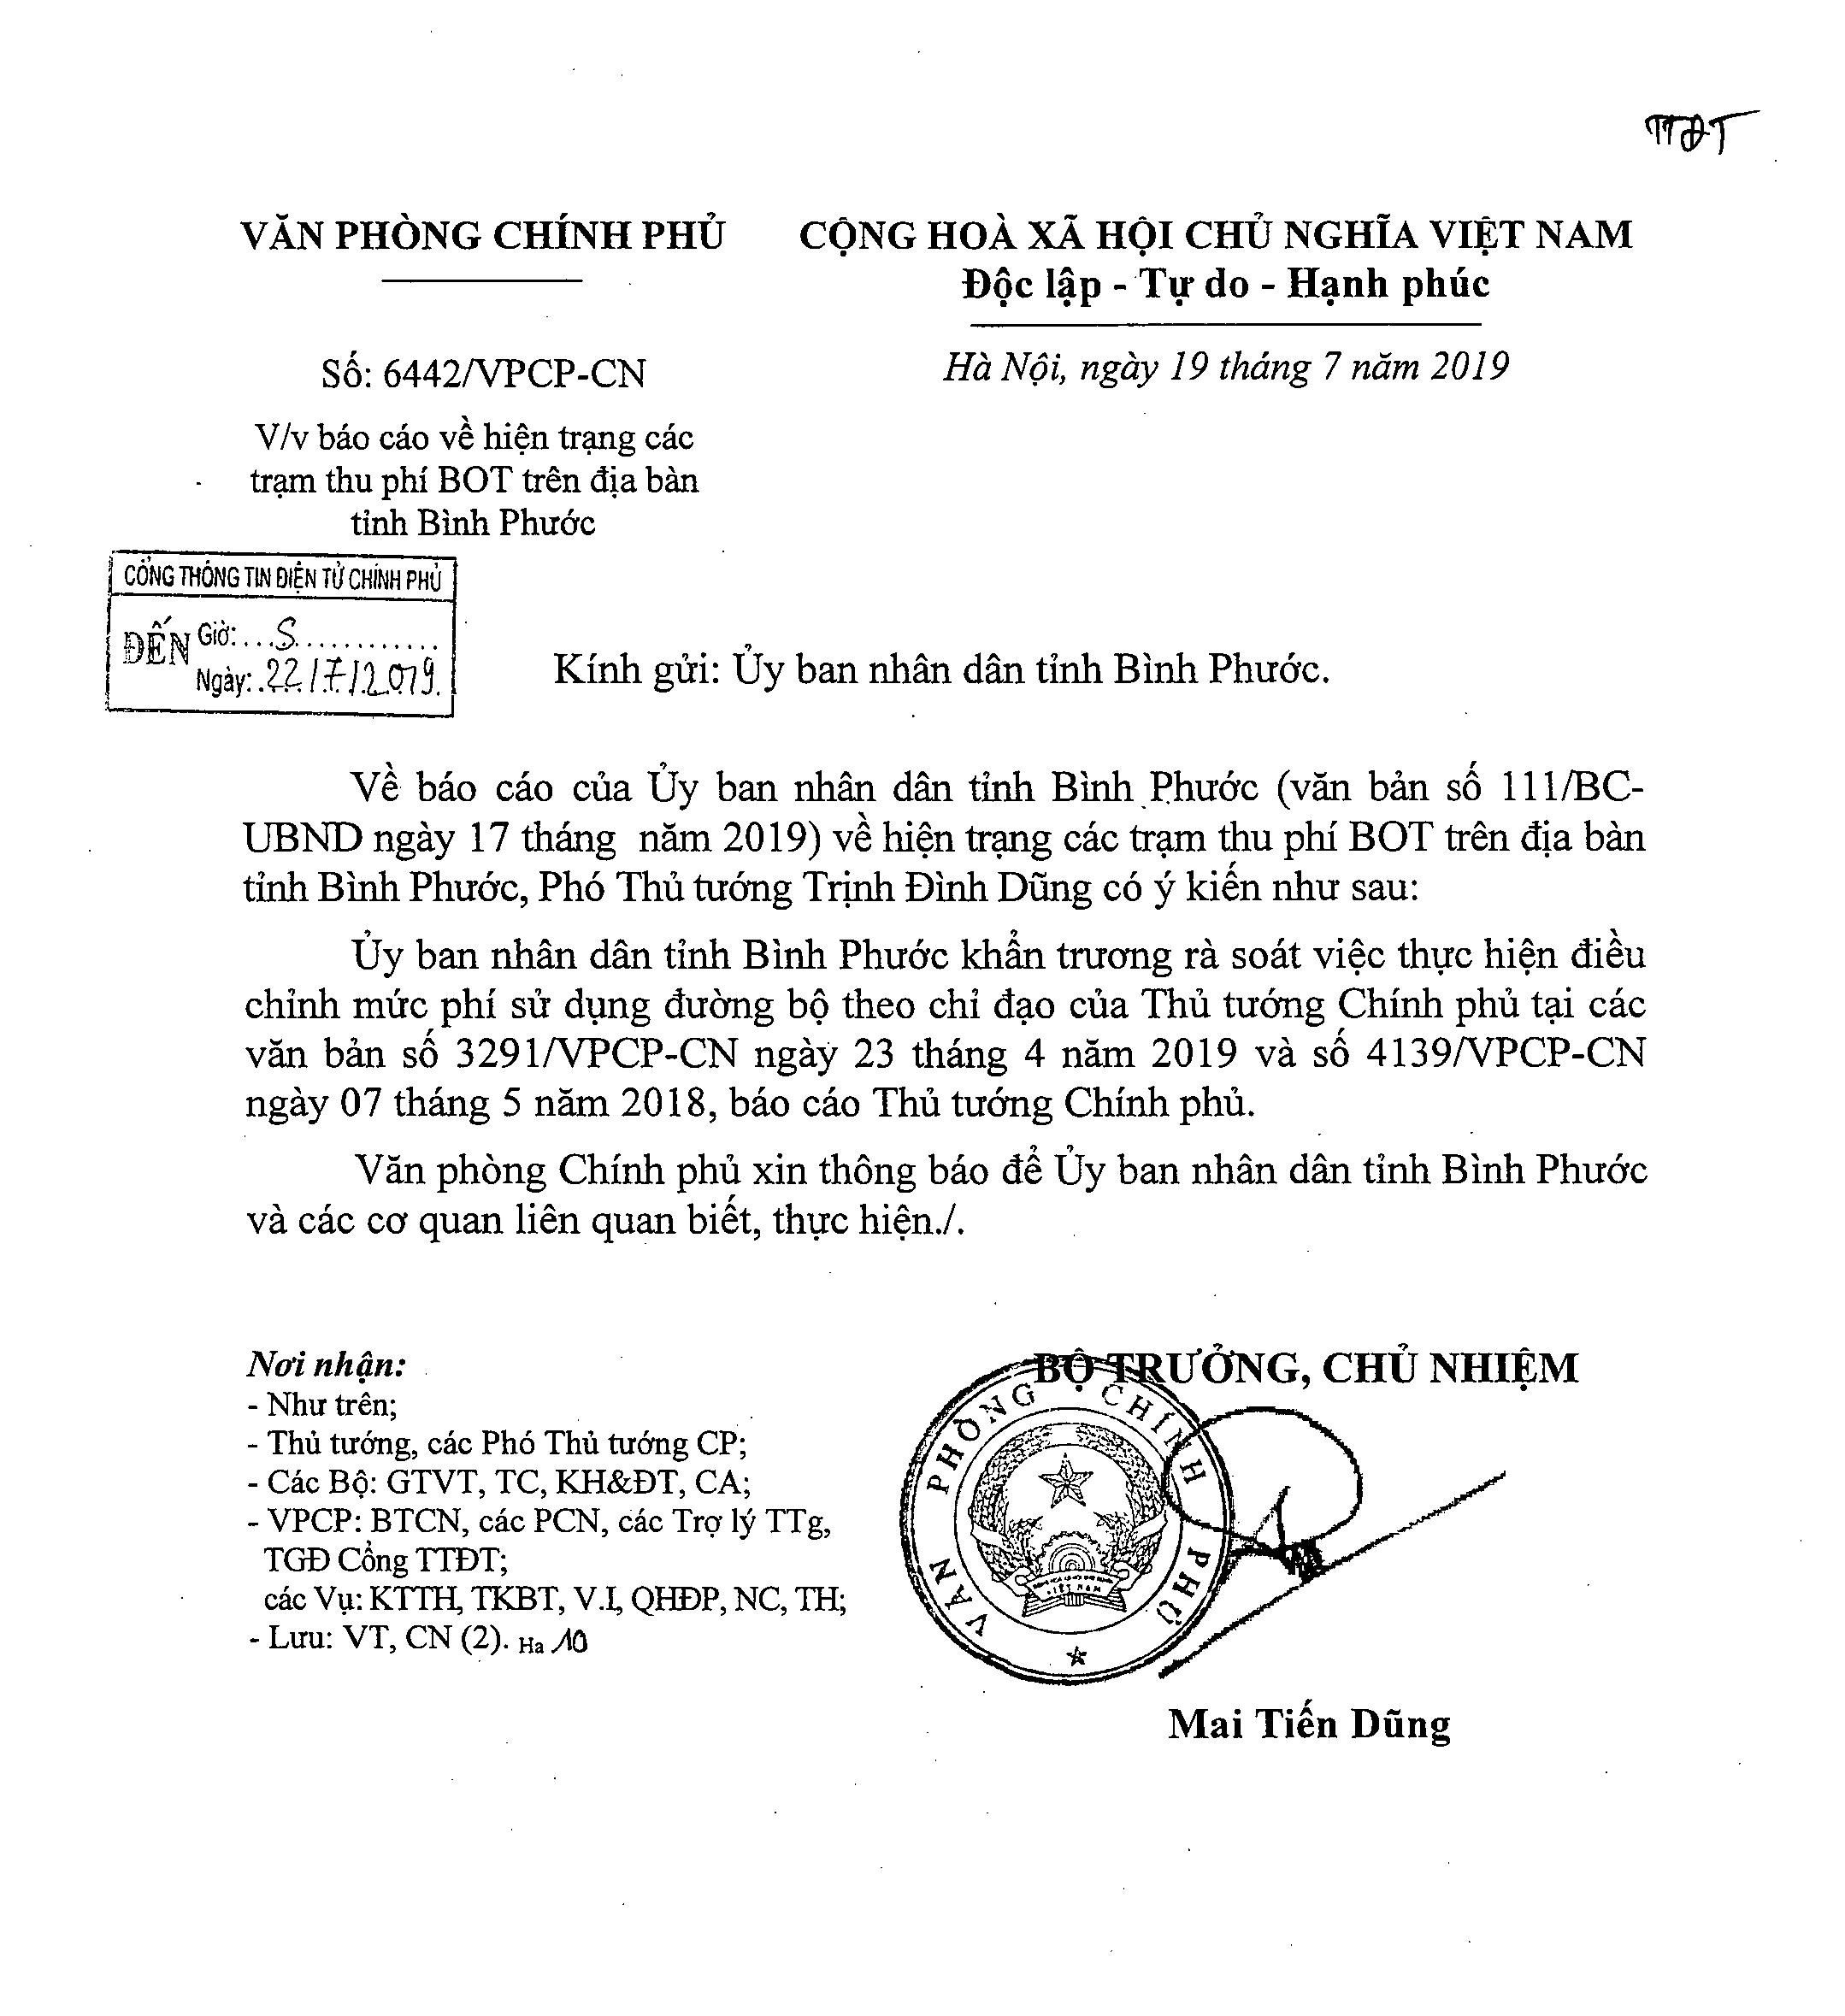 Văn bản yêu cầu UBND tỉnh Bình Phước khẩn trương rà soát việc điều chỉnh mức phí BOT theo chỉ đạo của Thủ tướng